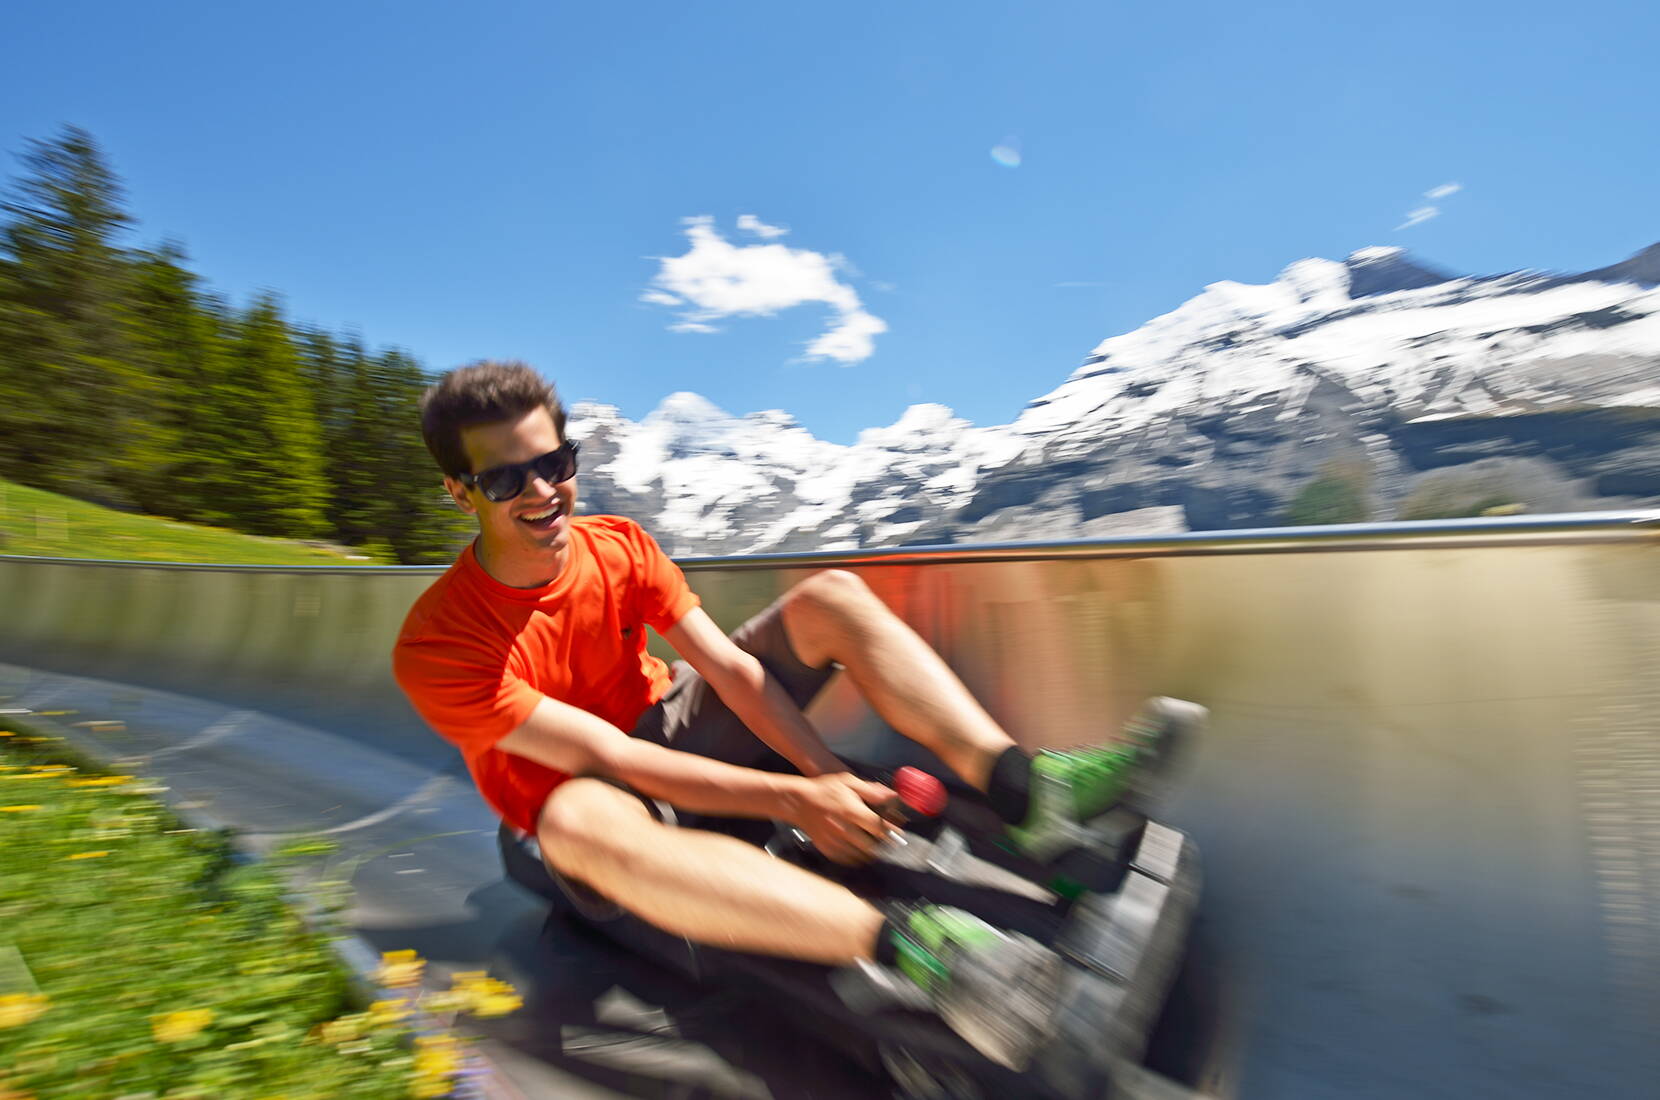 Destinazioni delle escursioni Berna – Gita in famiglia sulla pista da slittino estiva del lago di Oeschinen. Un'attrazione per grandi e piccini: da soli o in coppia, è semplicemente divertente!